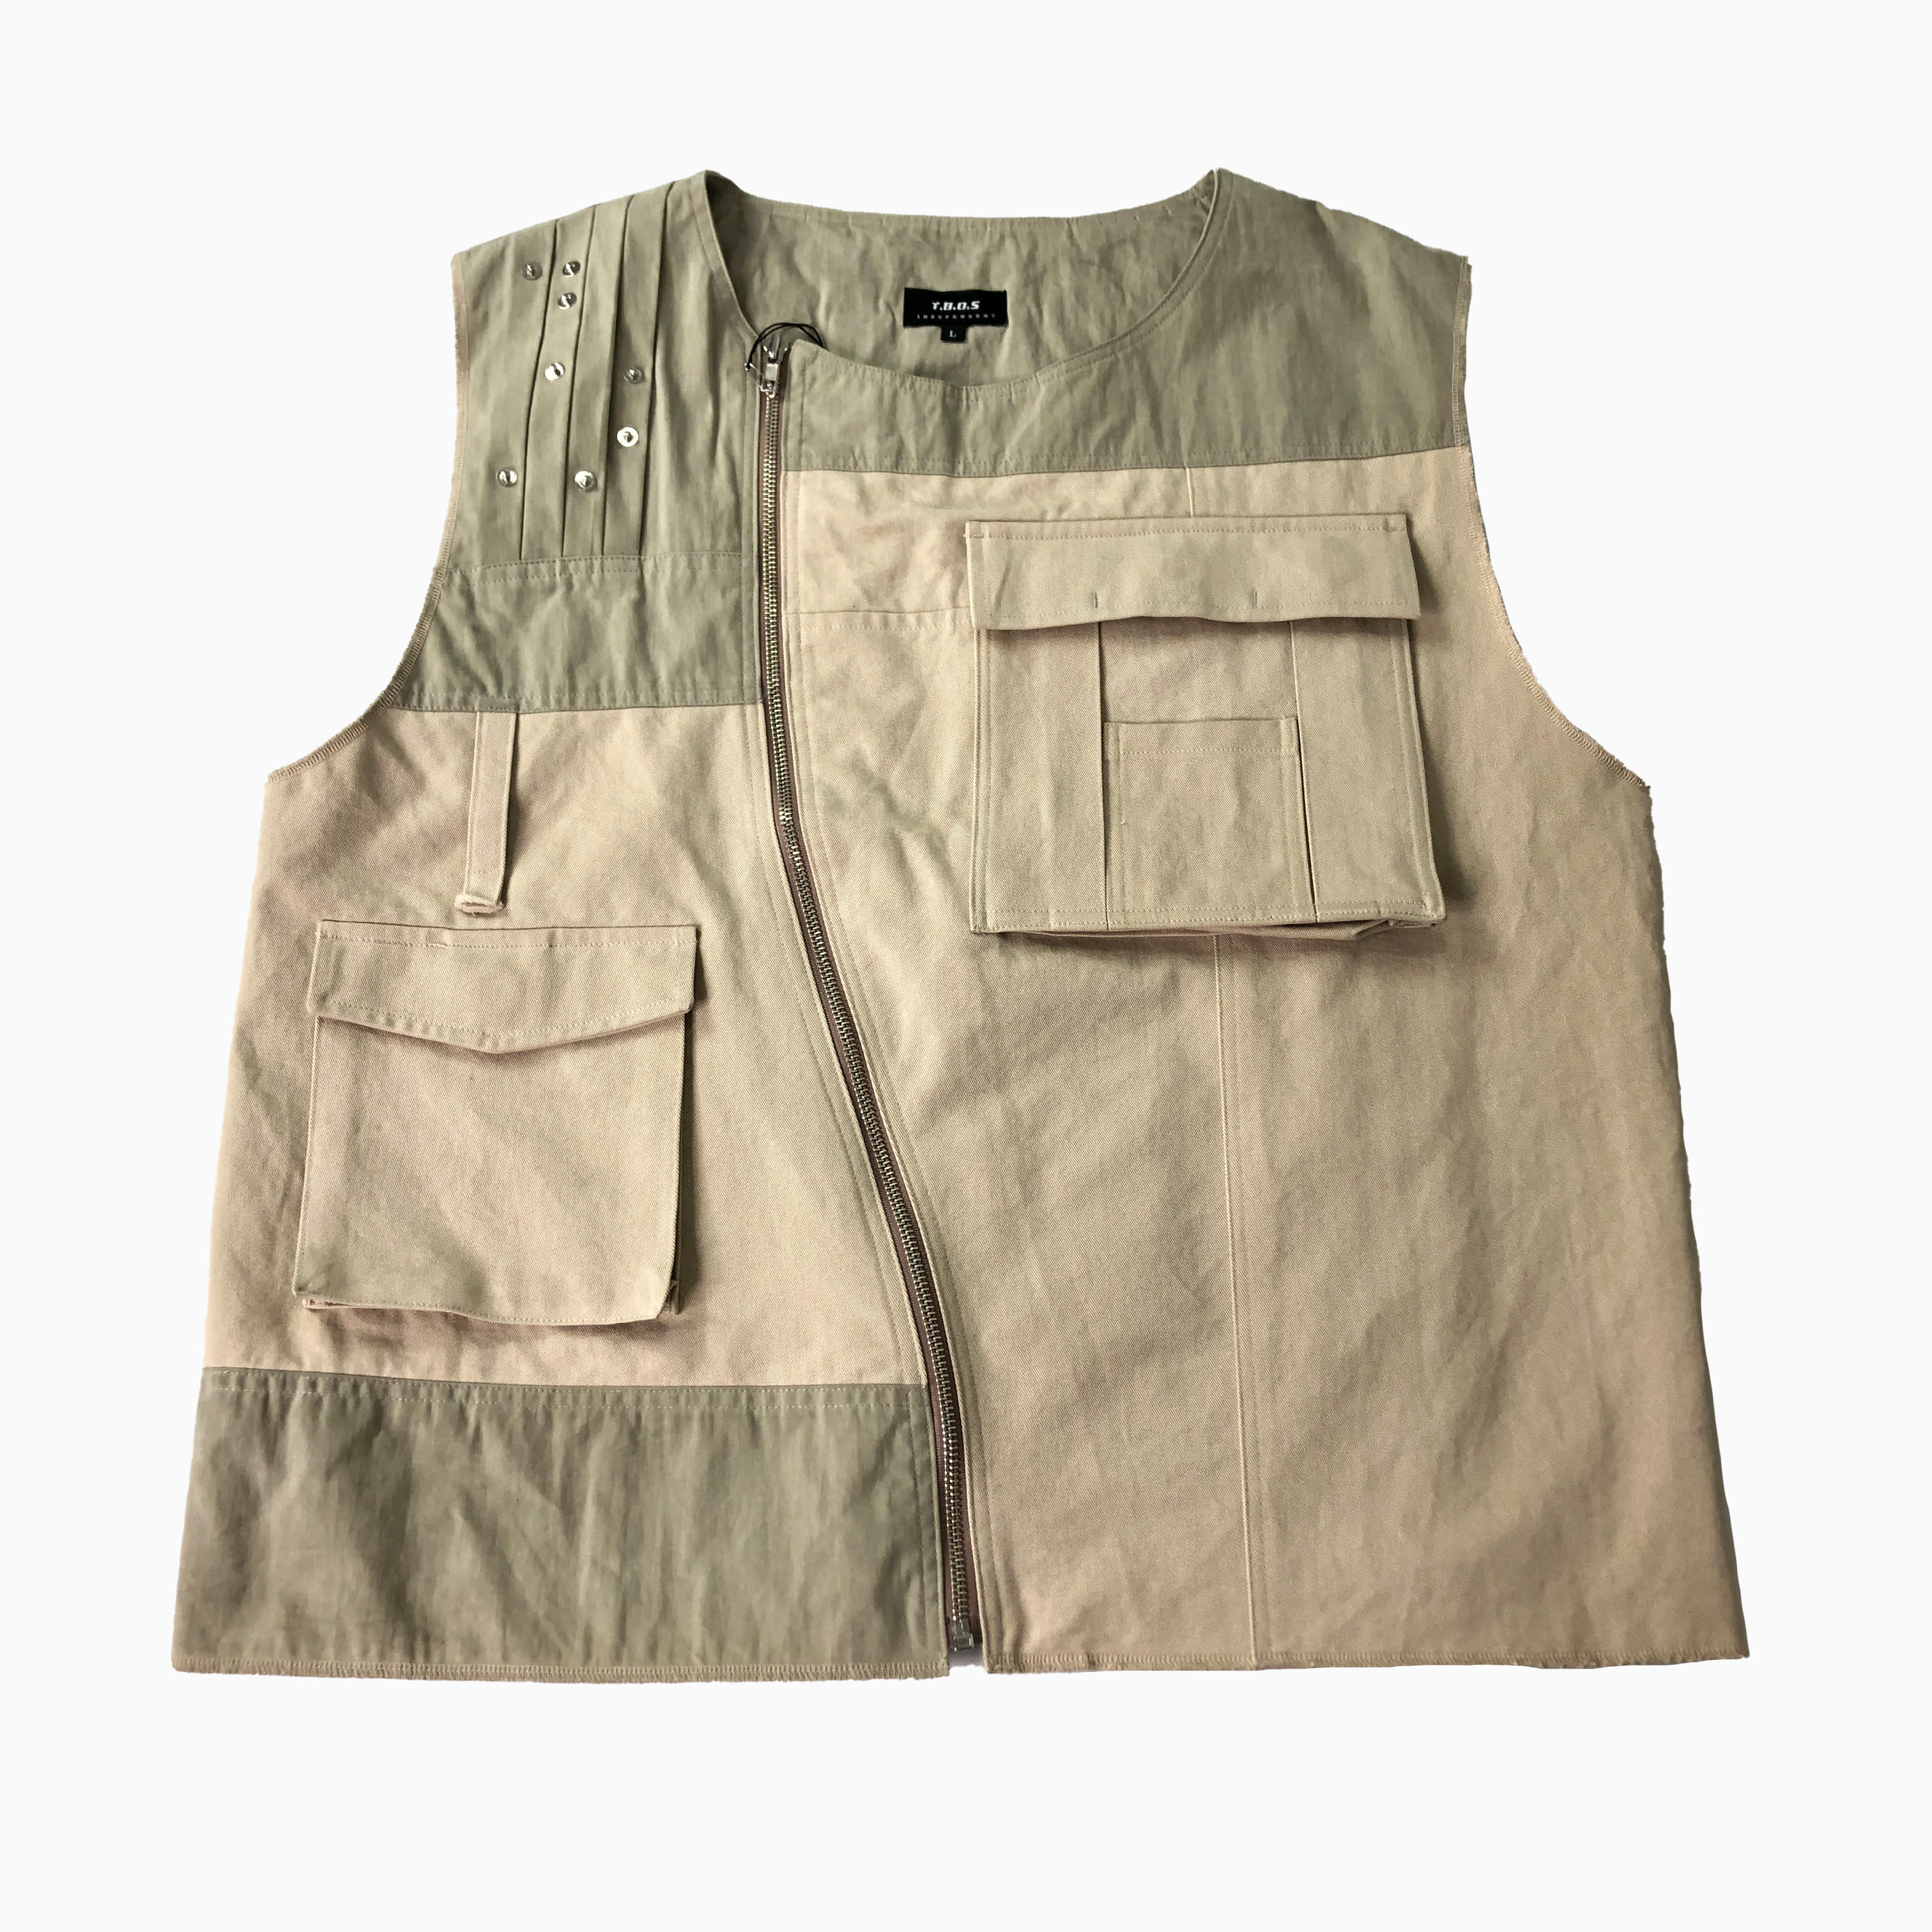 [T.B.O.S] Tech Vest BE - Size L